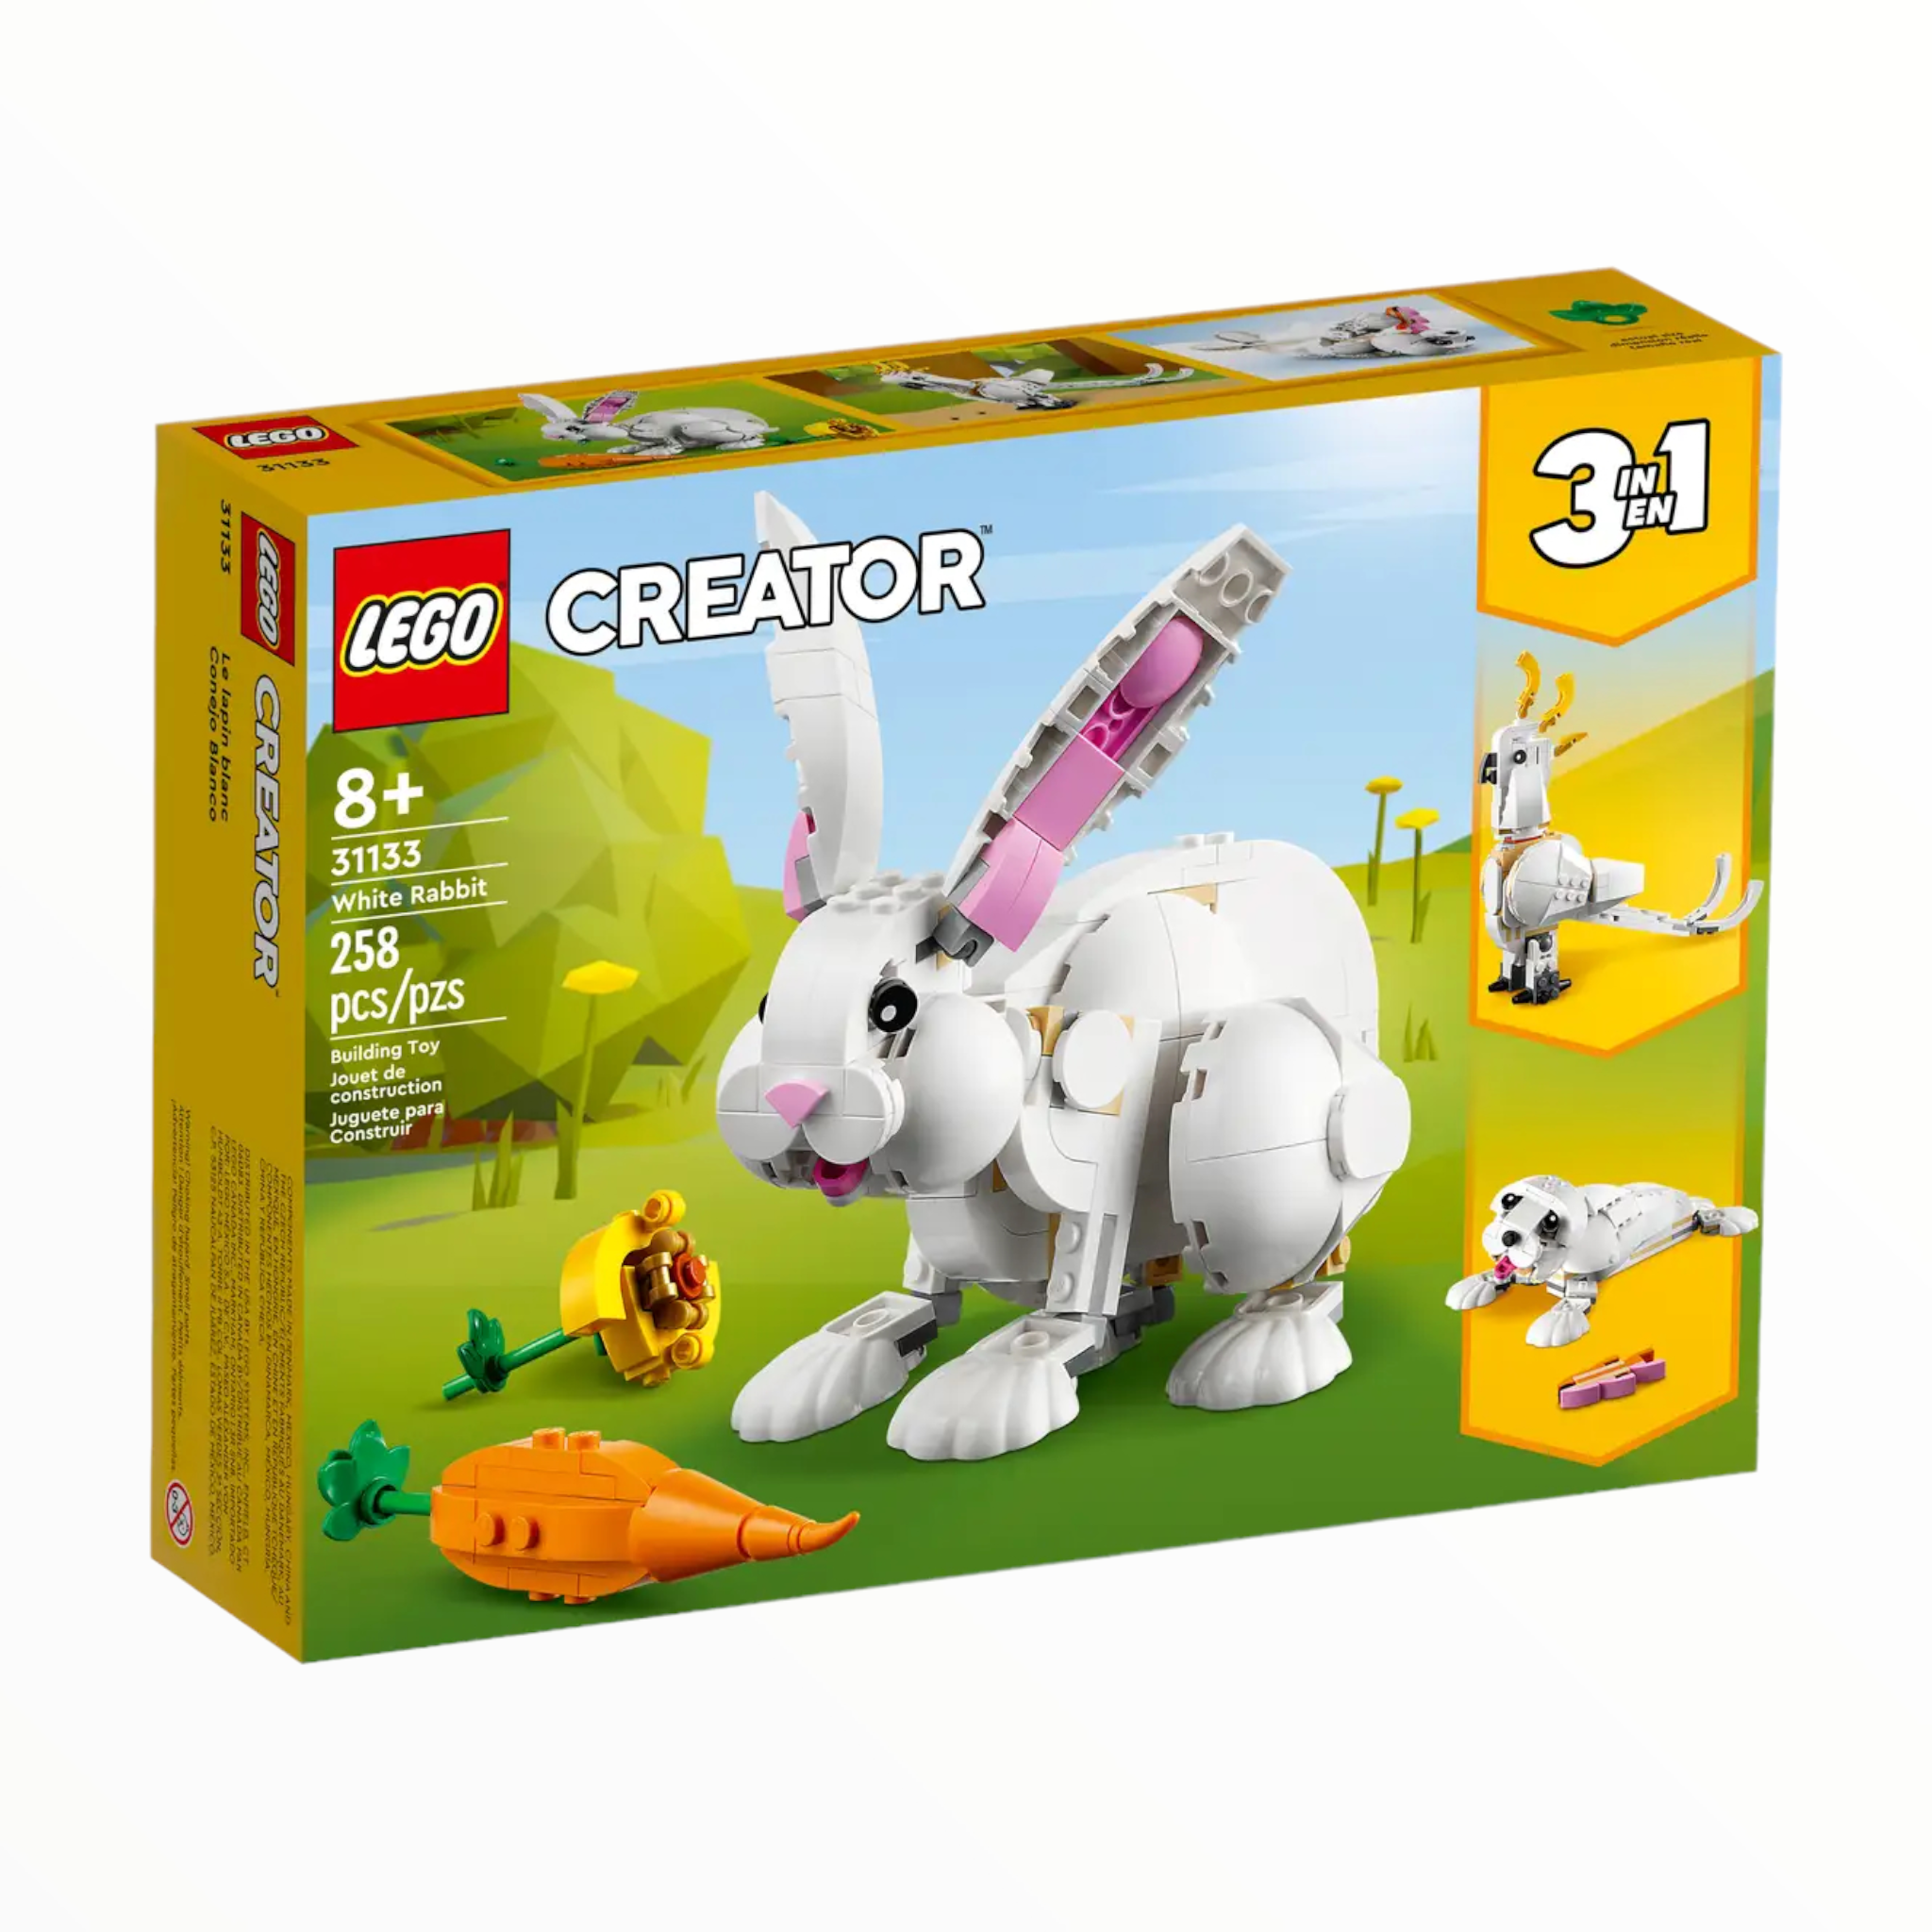 31133 Creator White Rabbit